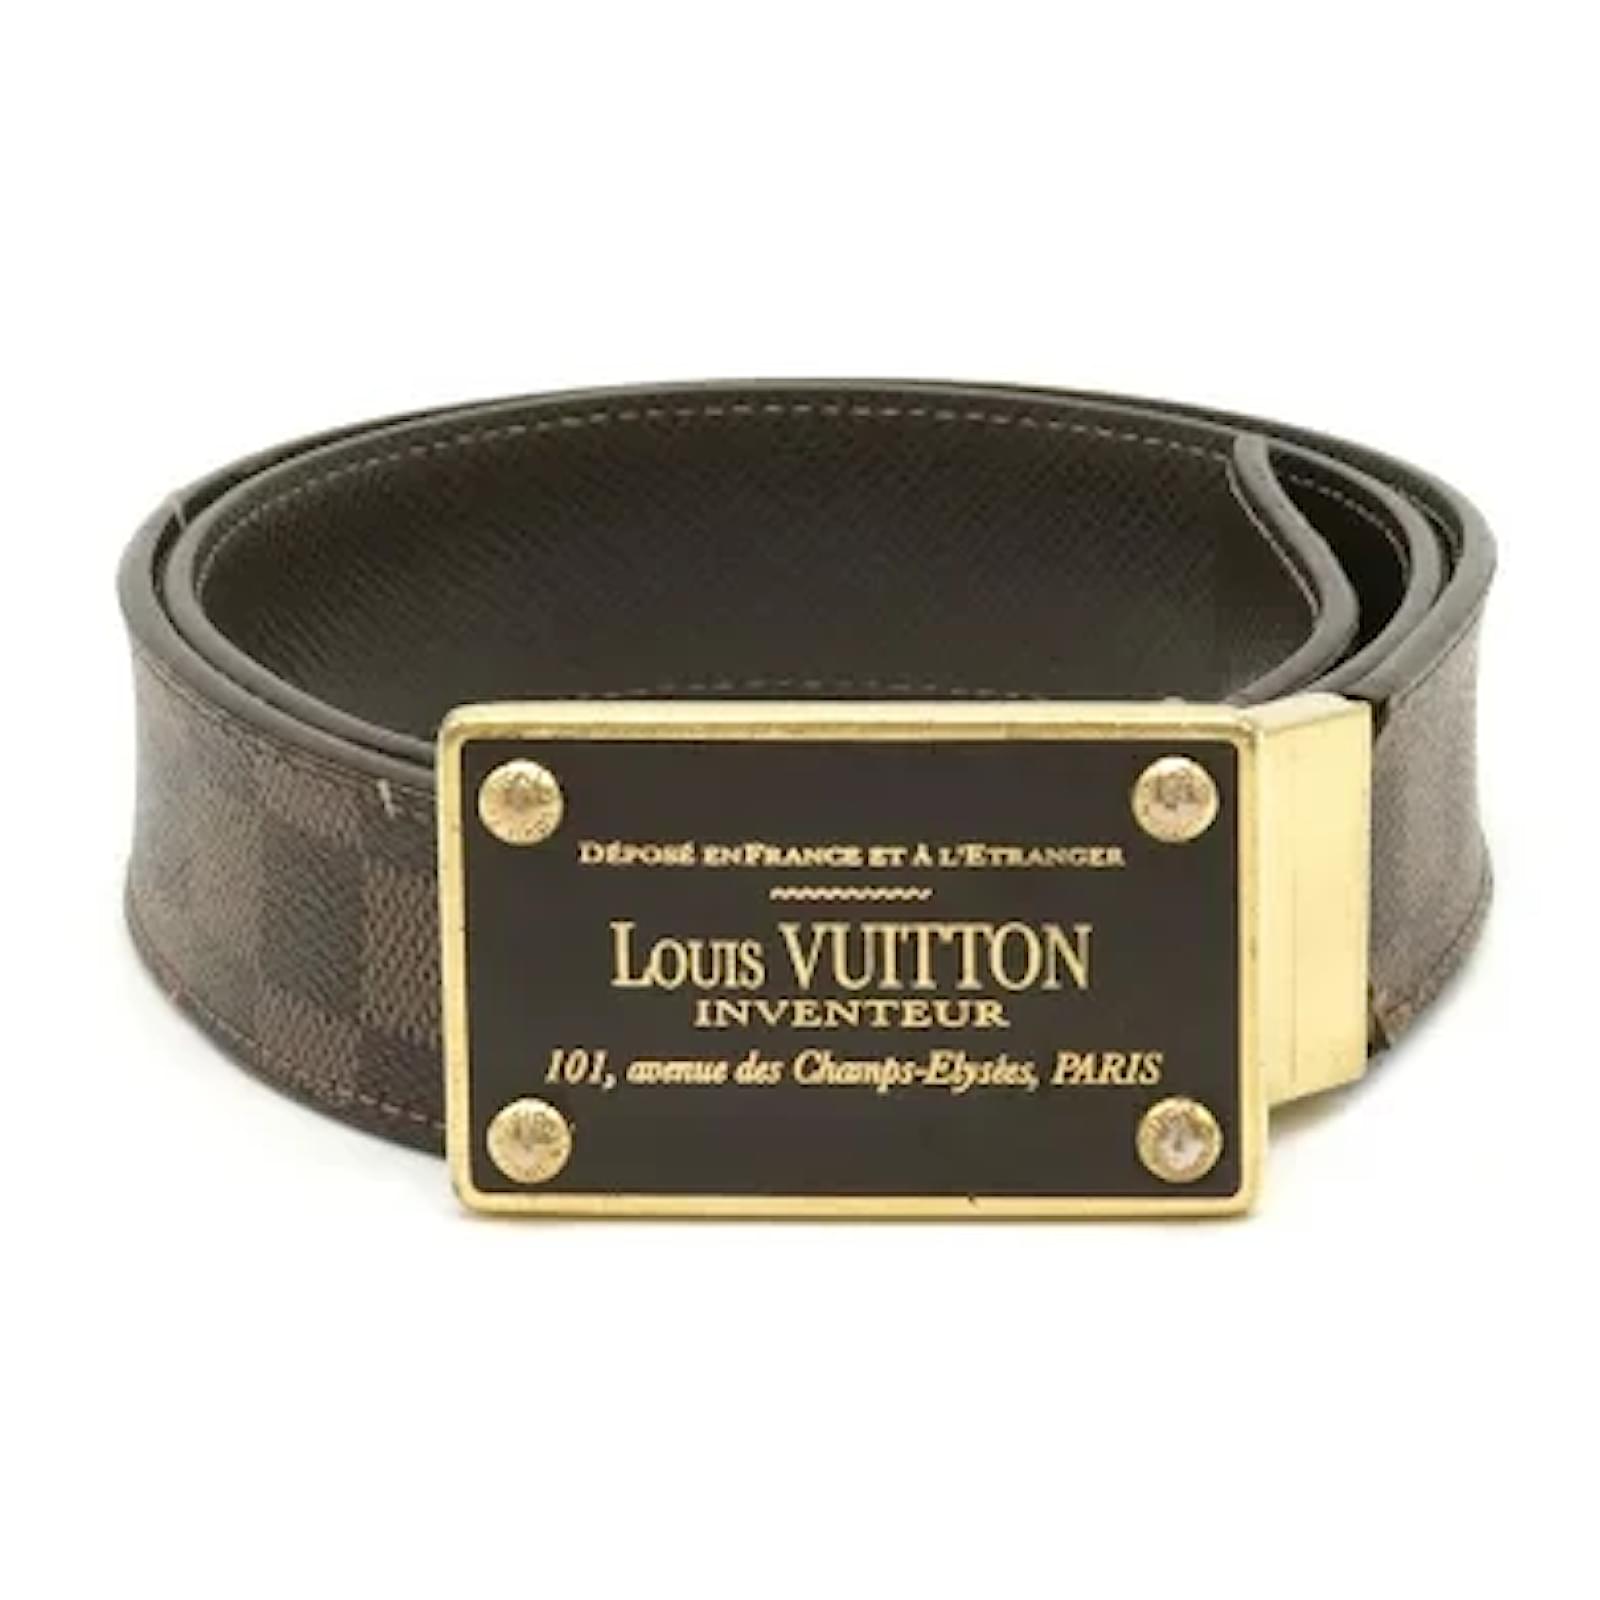 Cinturones de excelente de Calidad. 100% Piel. #louisvuitton